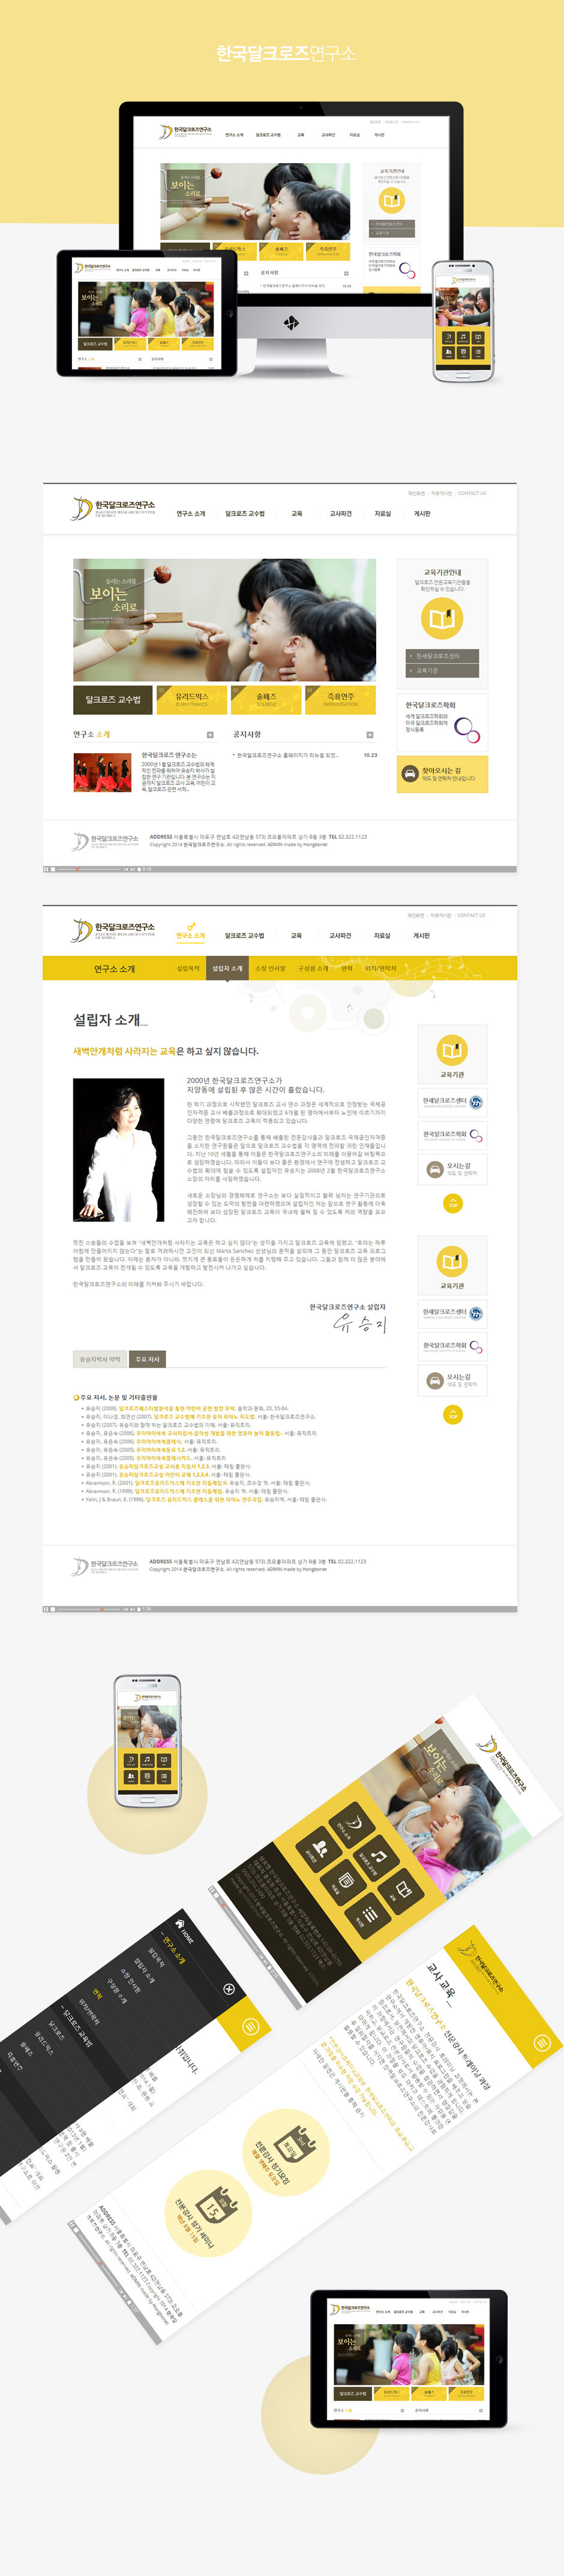 한국달크로즈연구소 홈페이지 상세보기